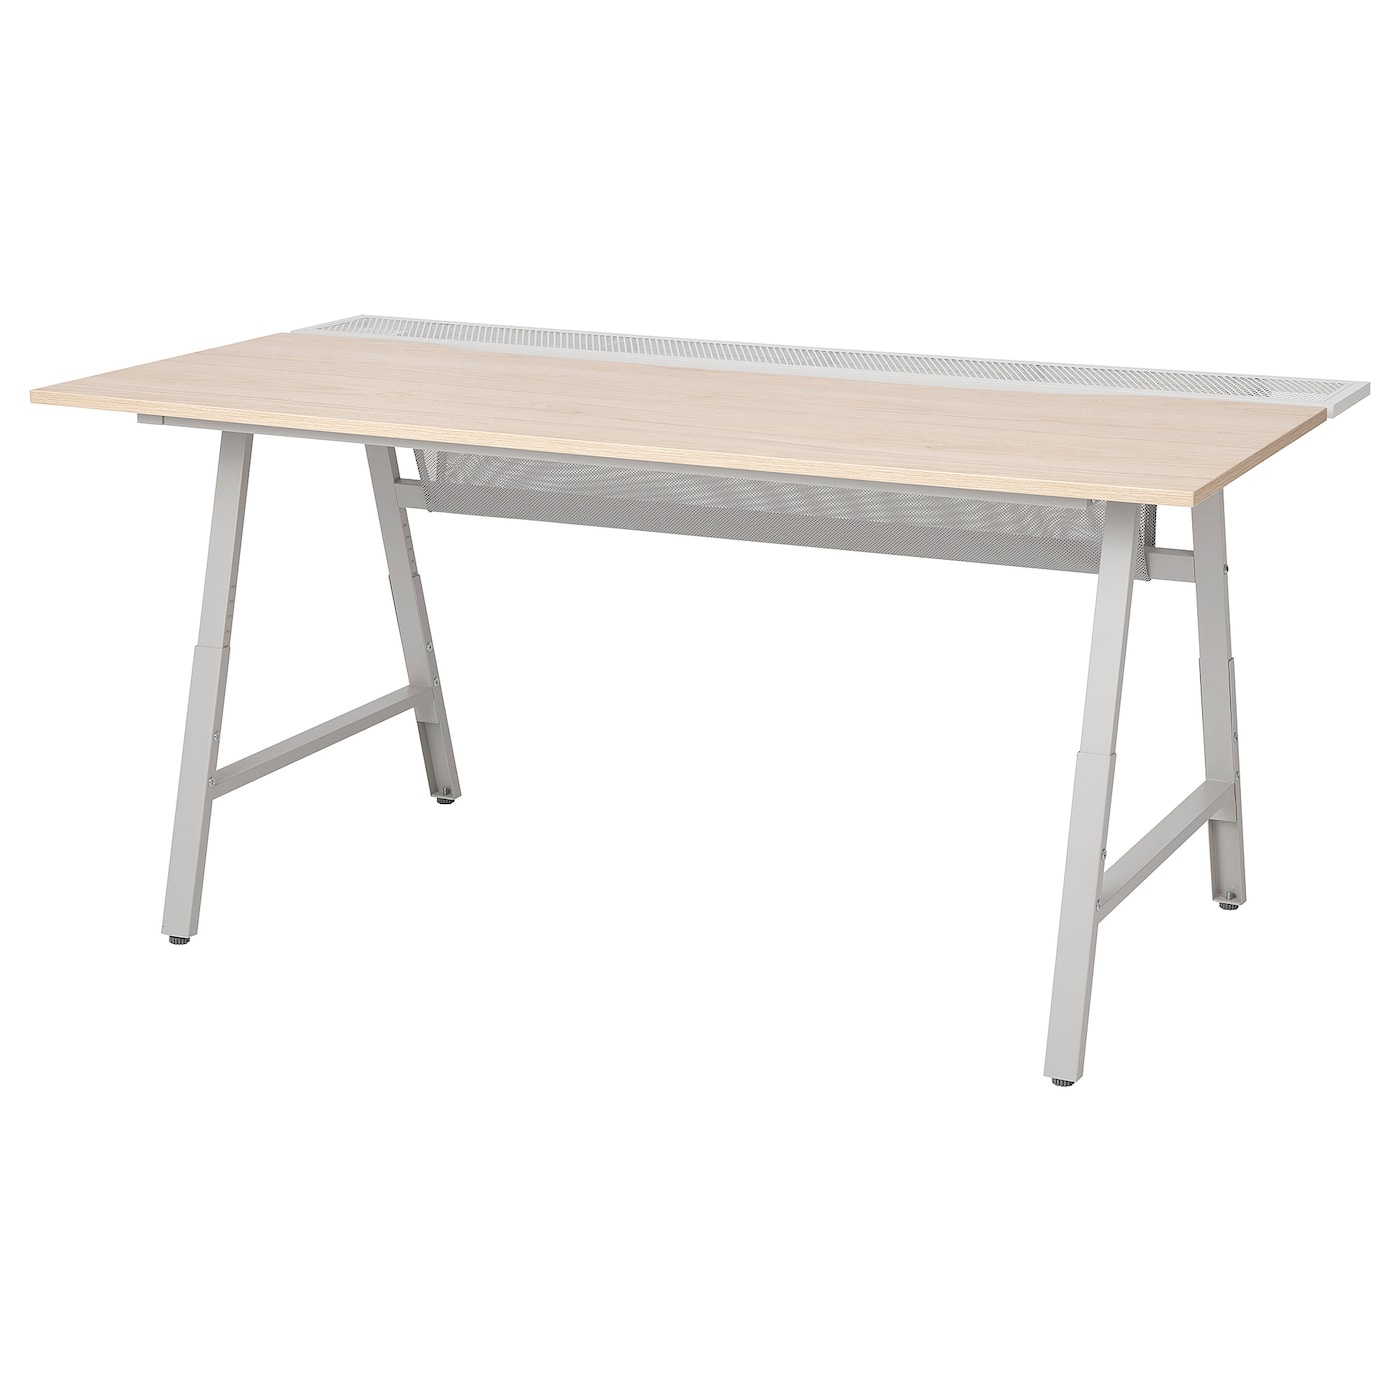 Игровой стол - IKEA UTESPELARE, с эффектом ясеня/серый, 160х80, УТЕСПЕЛАРЕ ИКЕА  ИКЕА